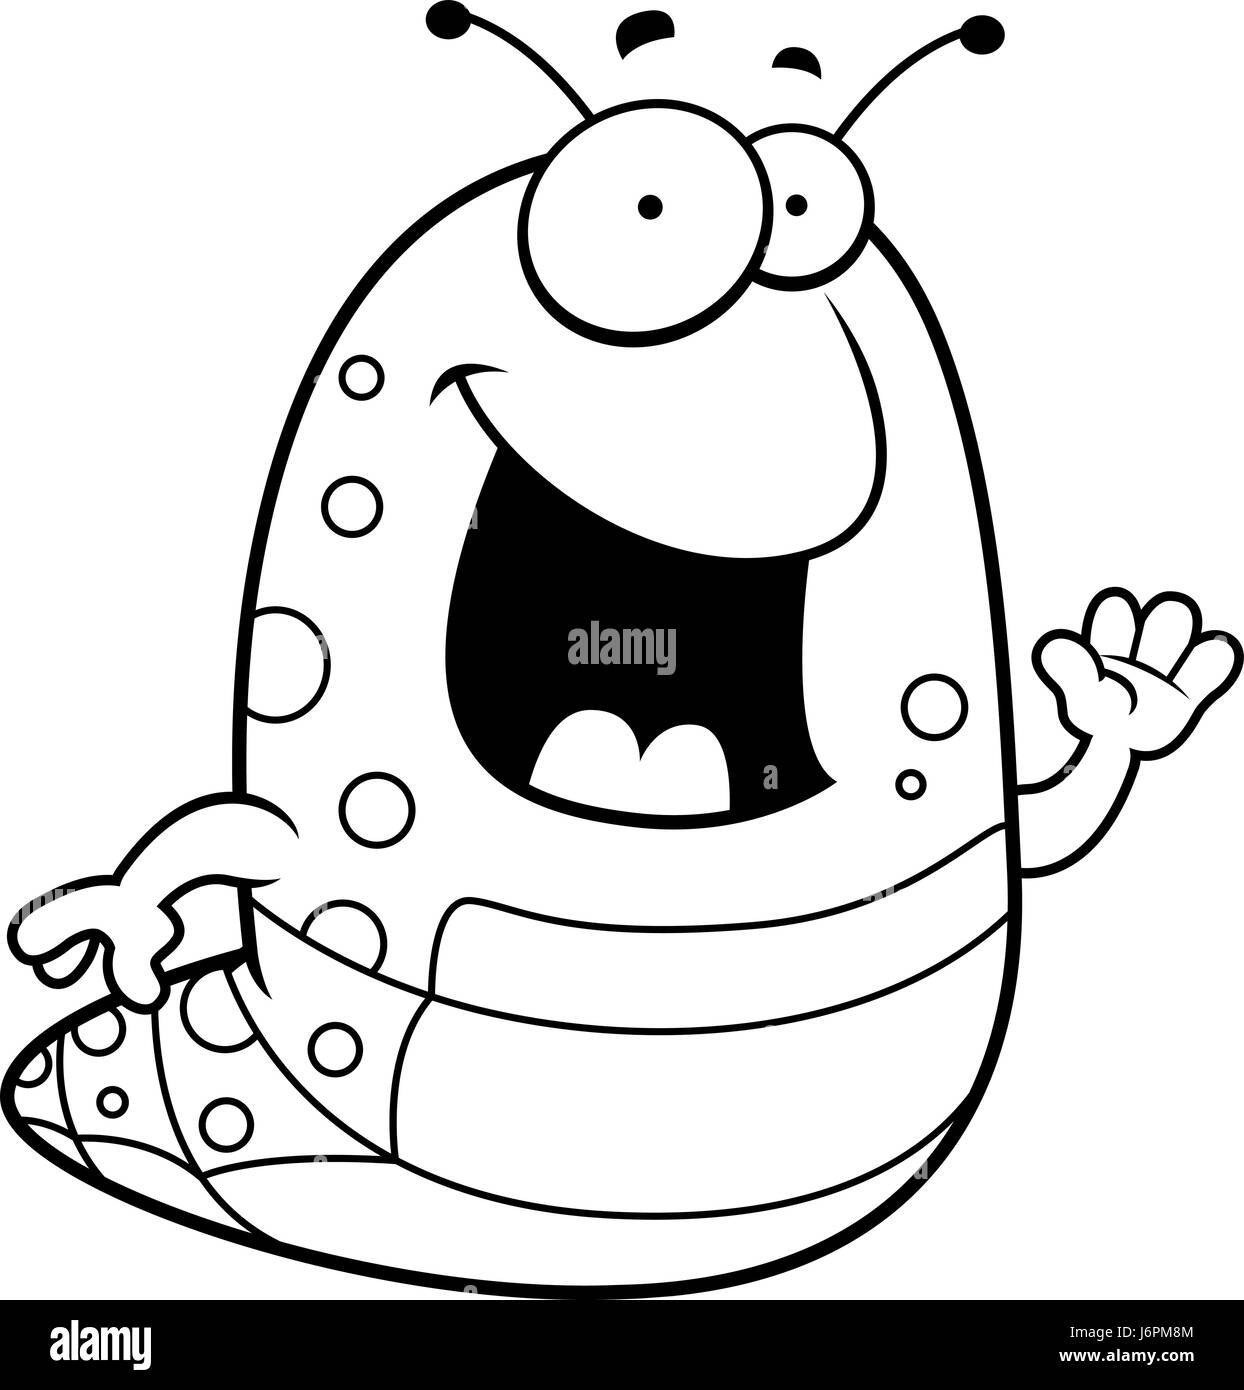 Cartoon caterpillar Black and White Stock Photos & Images - Alamy